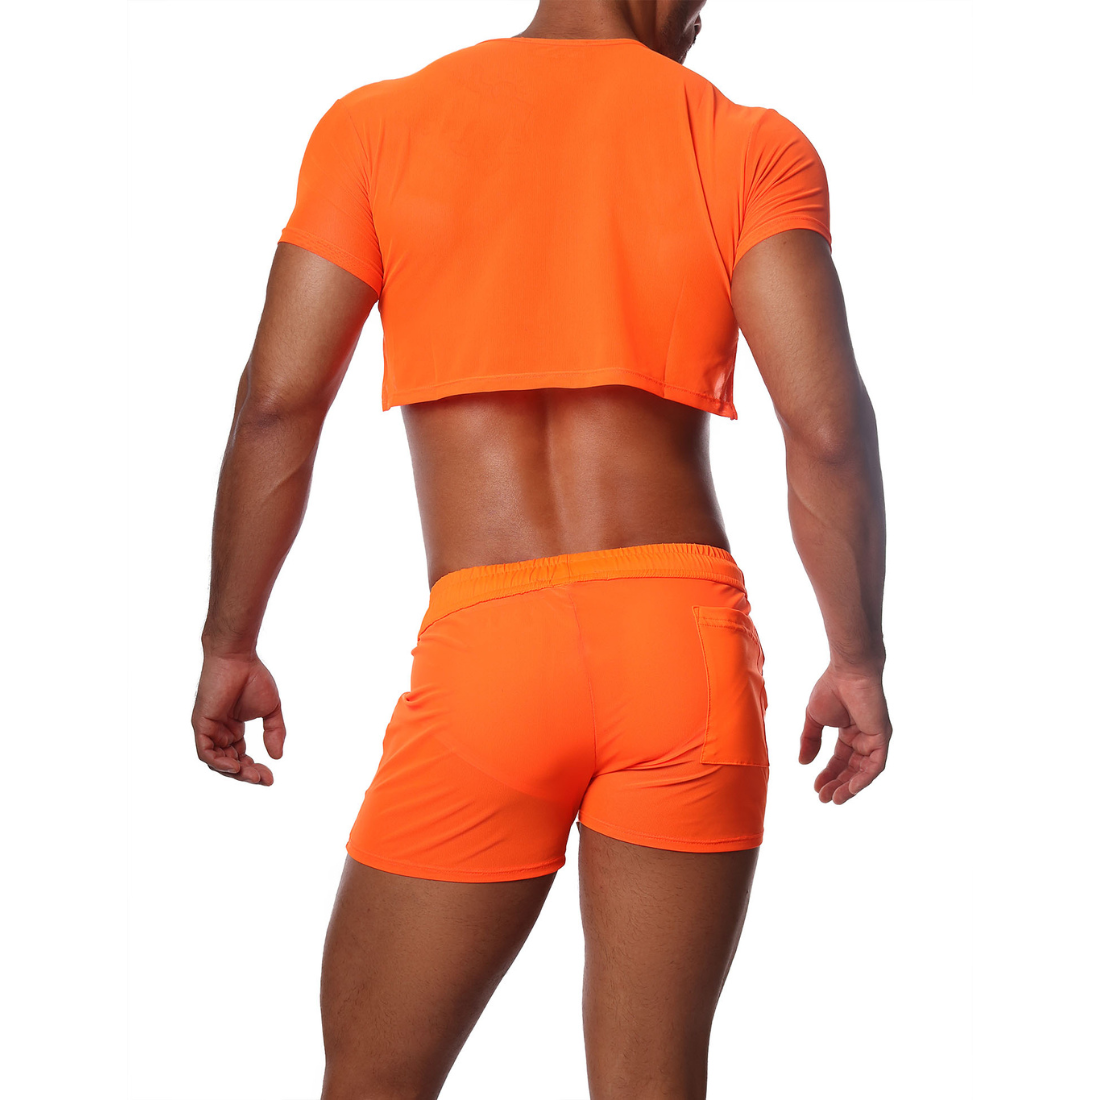 Sexy neon oranje gay crop top, ontworpen door het Franse modehuis Tof Paris. Perfect voor gay mannen en te koop bij Flavourez.